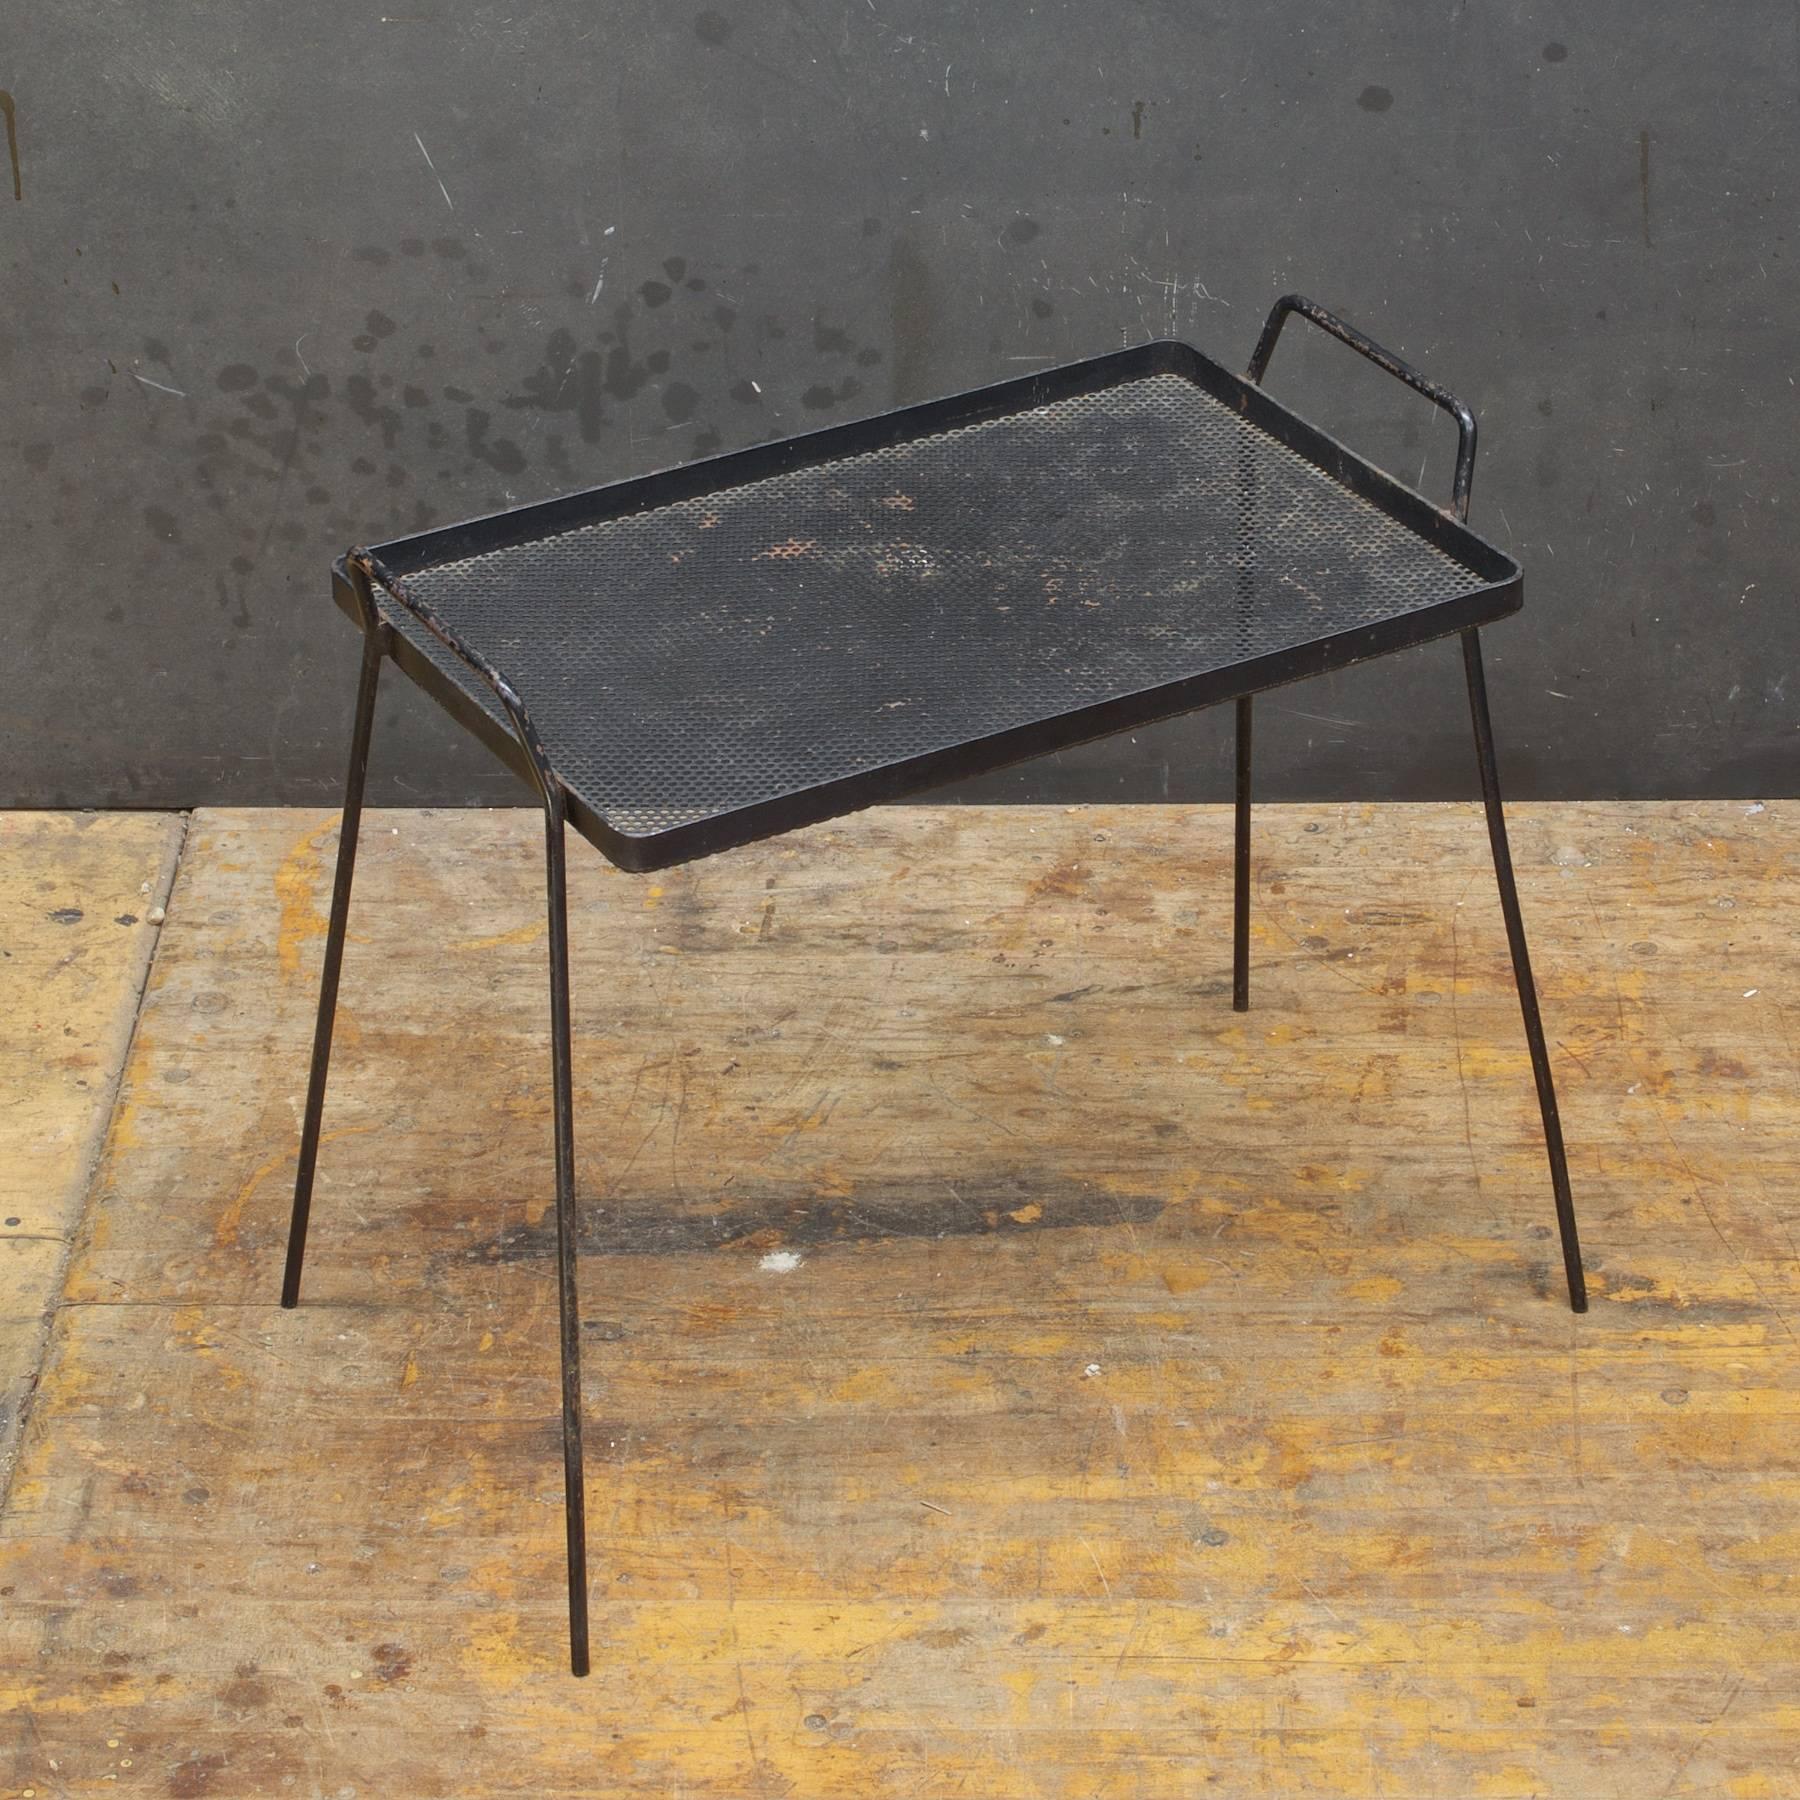 Modell Nr. TS400 Tablett-Tisch. Seltener Beistelltisch, Oberfläche misst 17,5 breit und 11,5 tief.